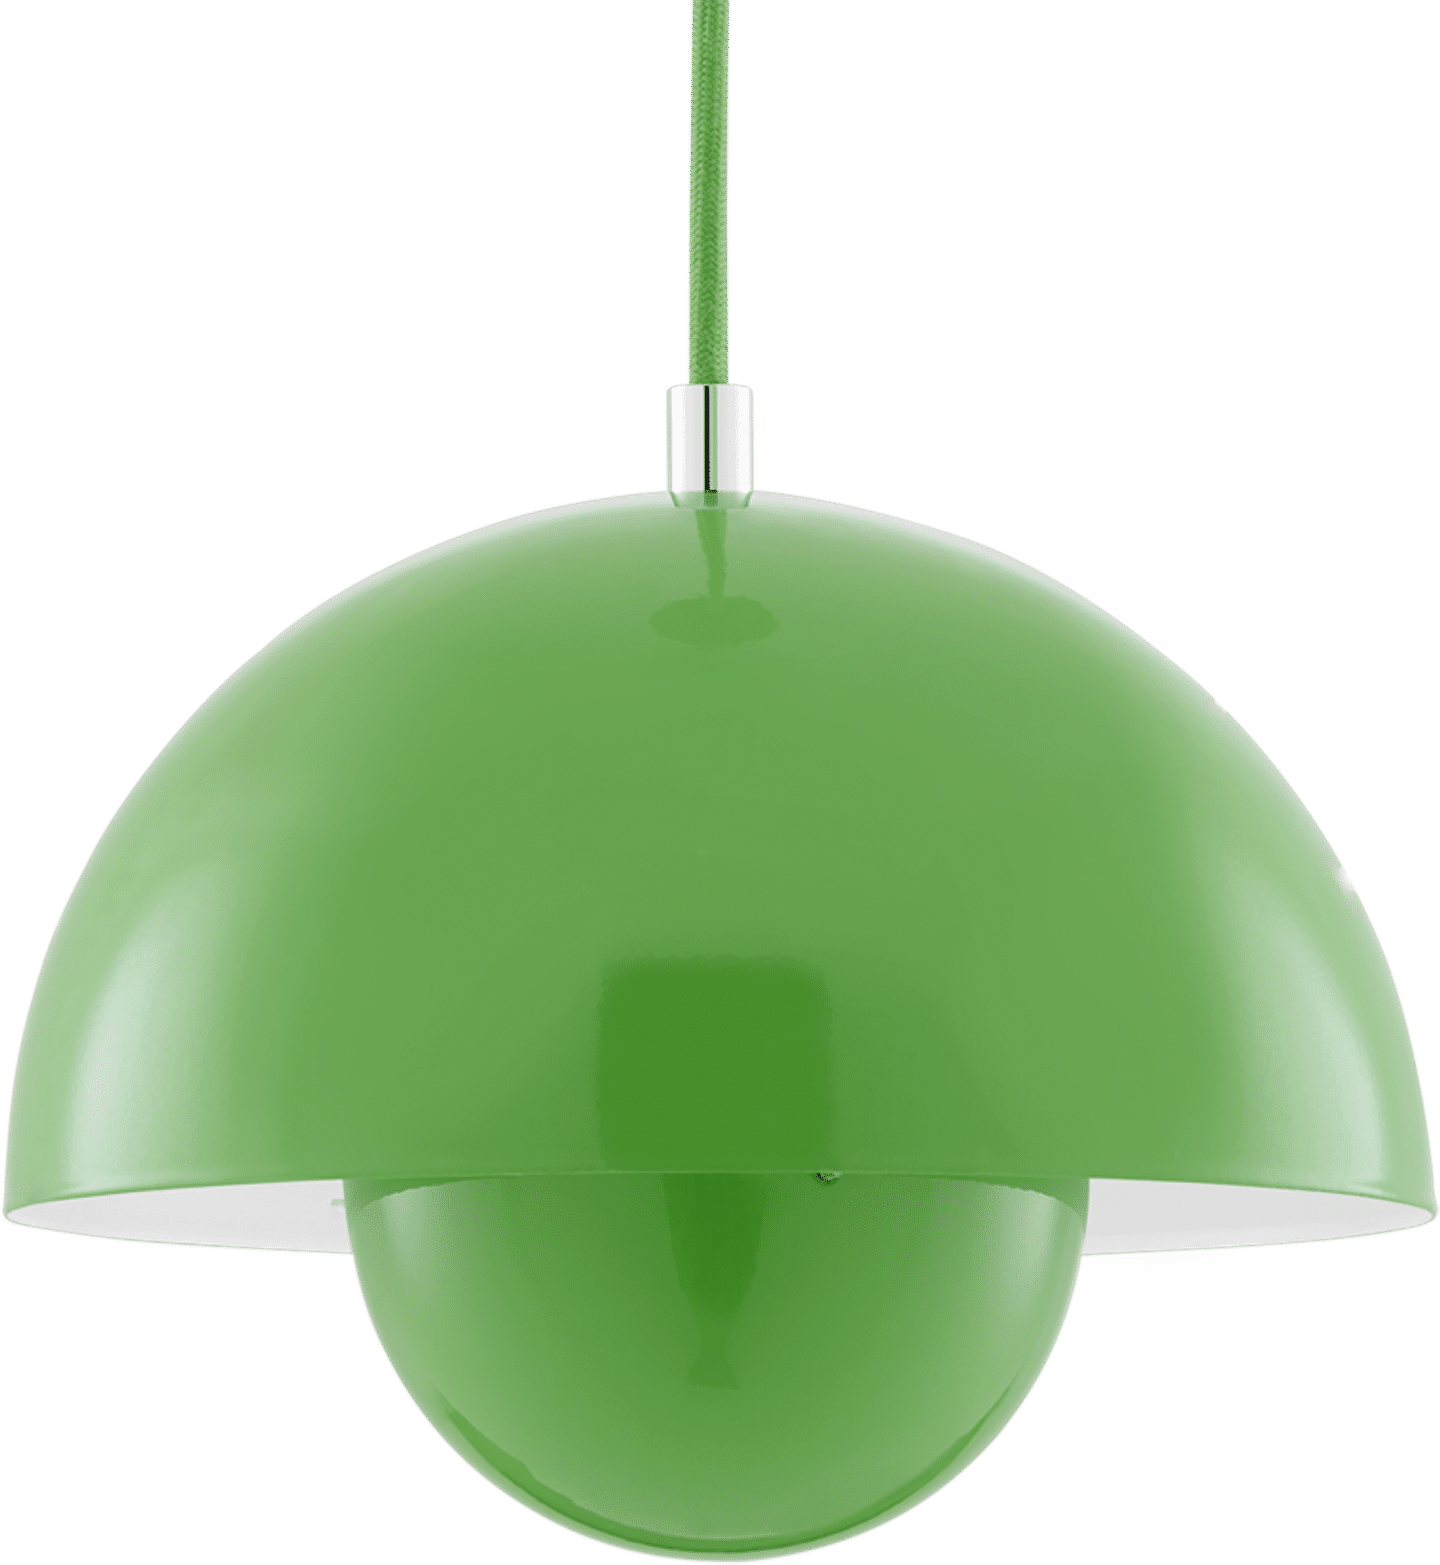 Bloempot Lamp Green image.